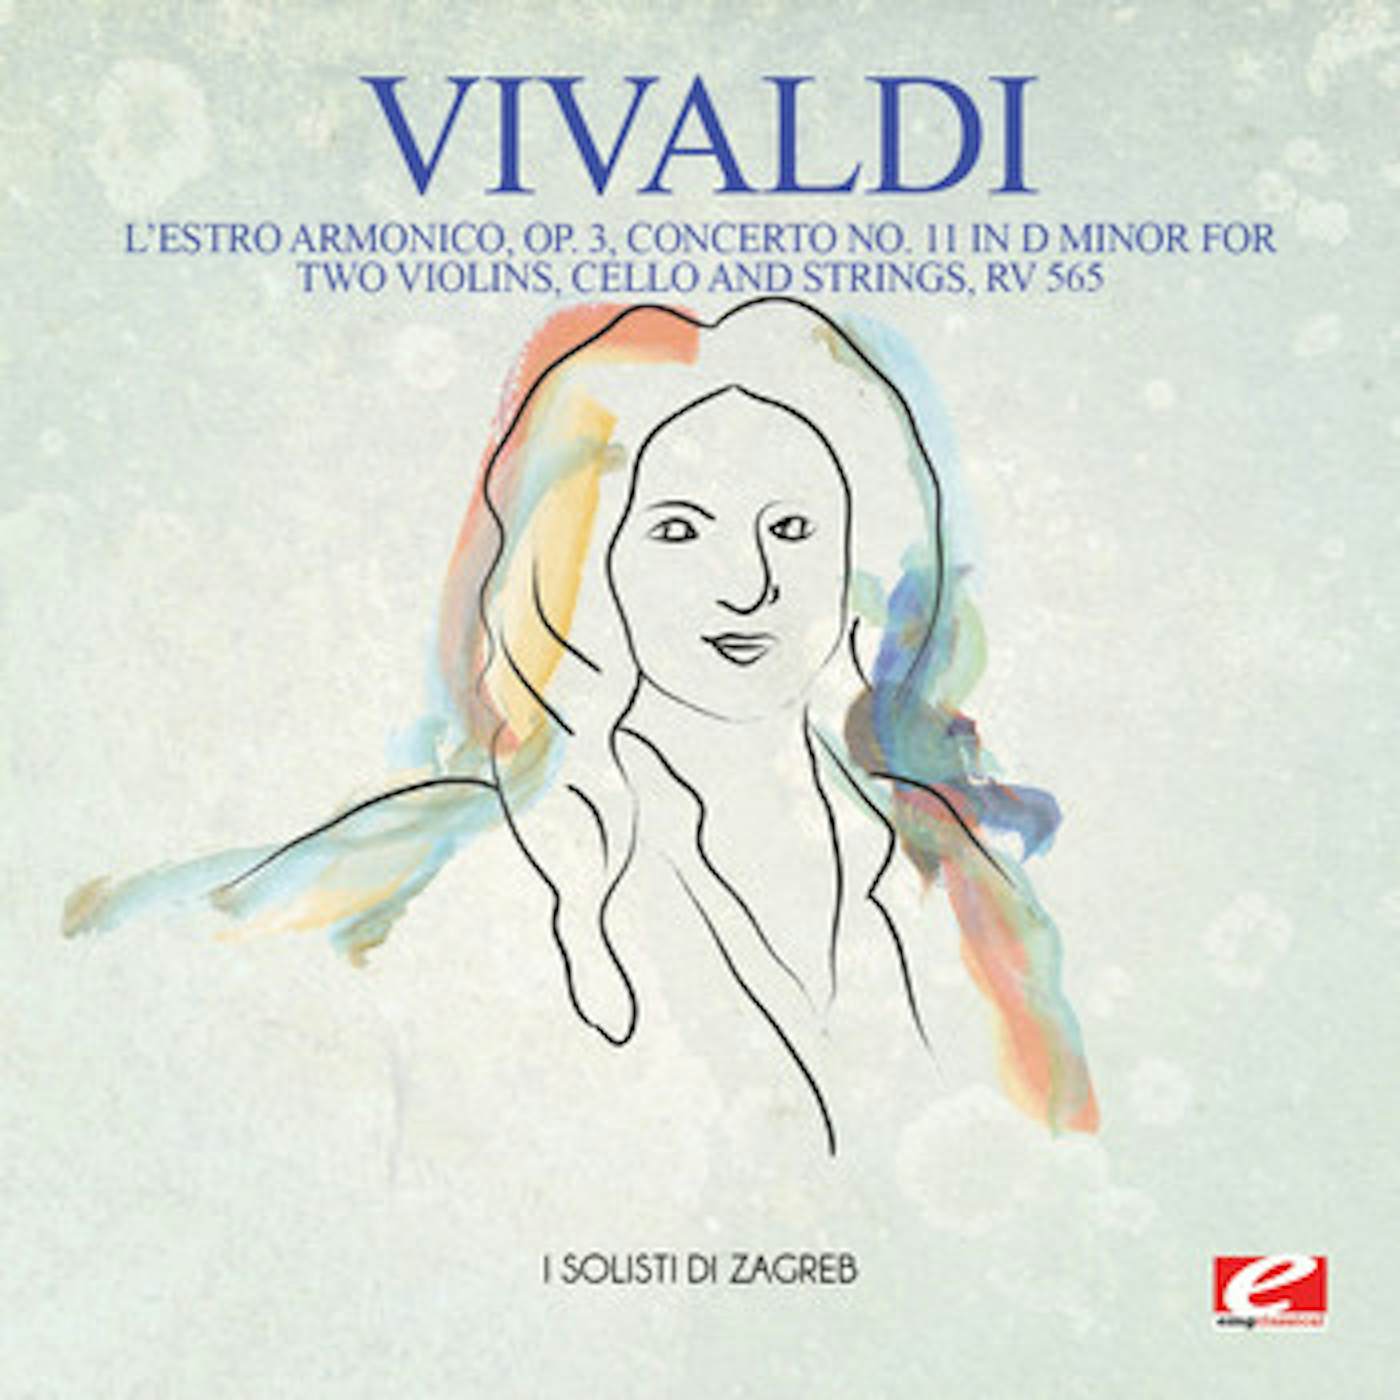 Antonio Vivaldi L'ESTRO ARMONICO OP. 3 CONCERTO NO. 11 IN D MINOR CD